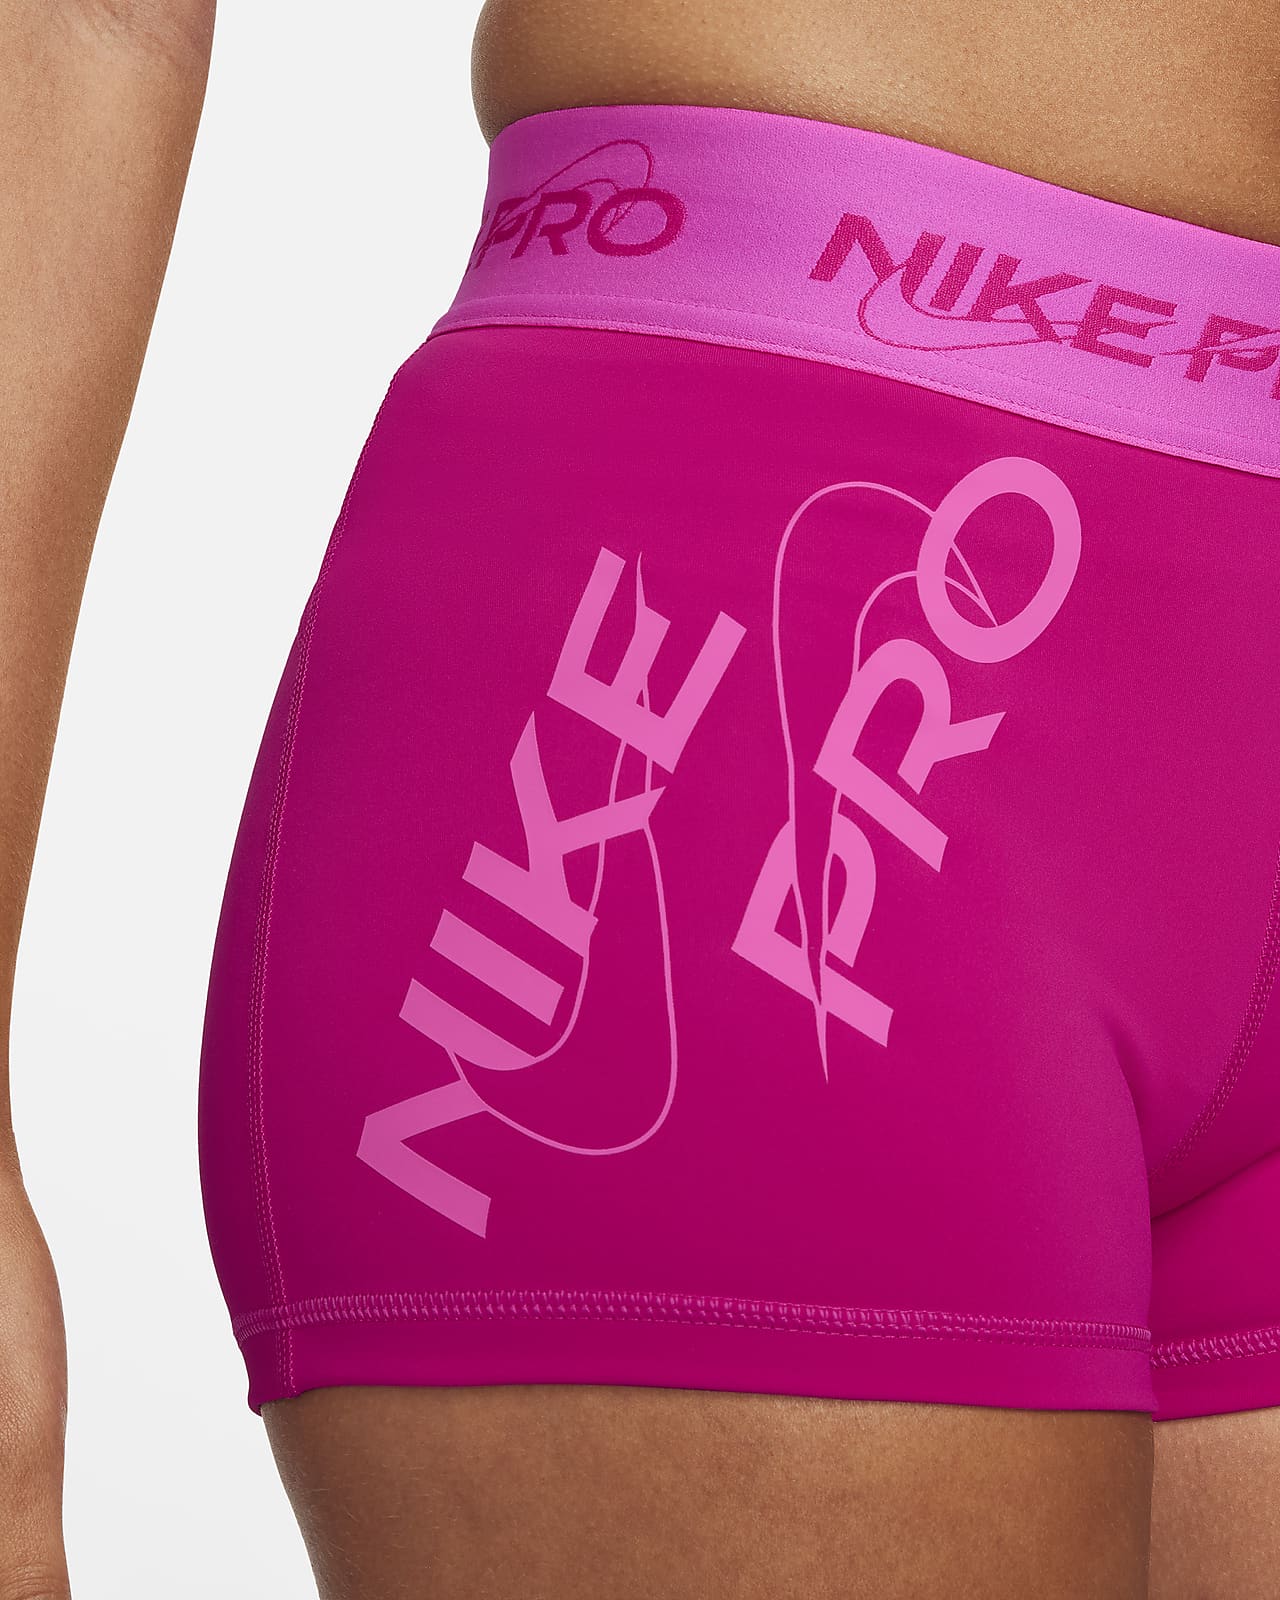 Mujer Nike Pro Shorts. Nike MX